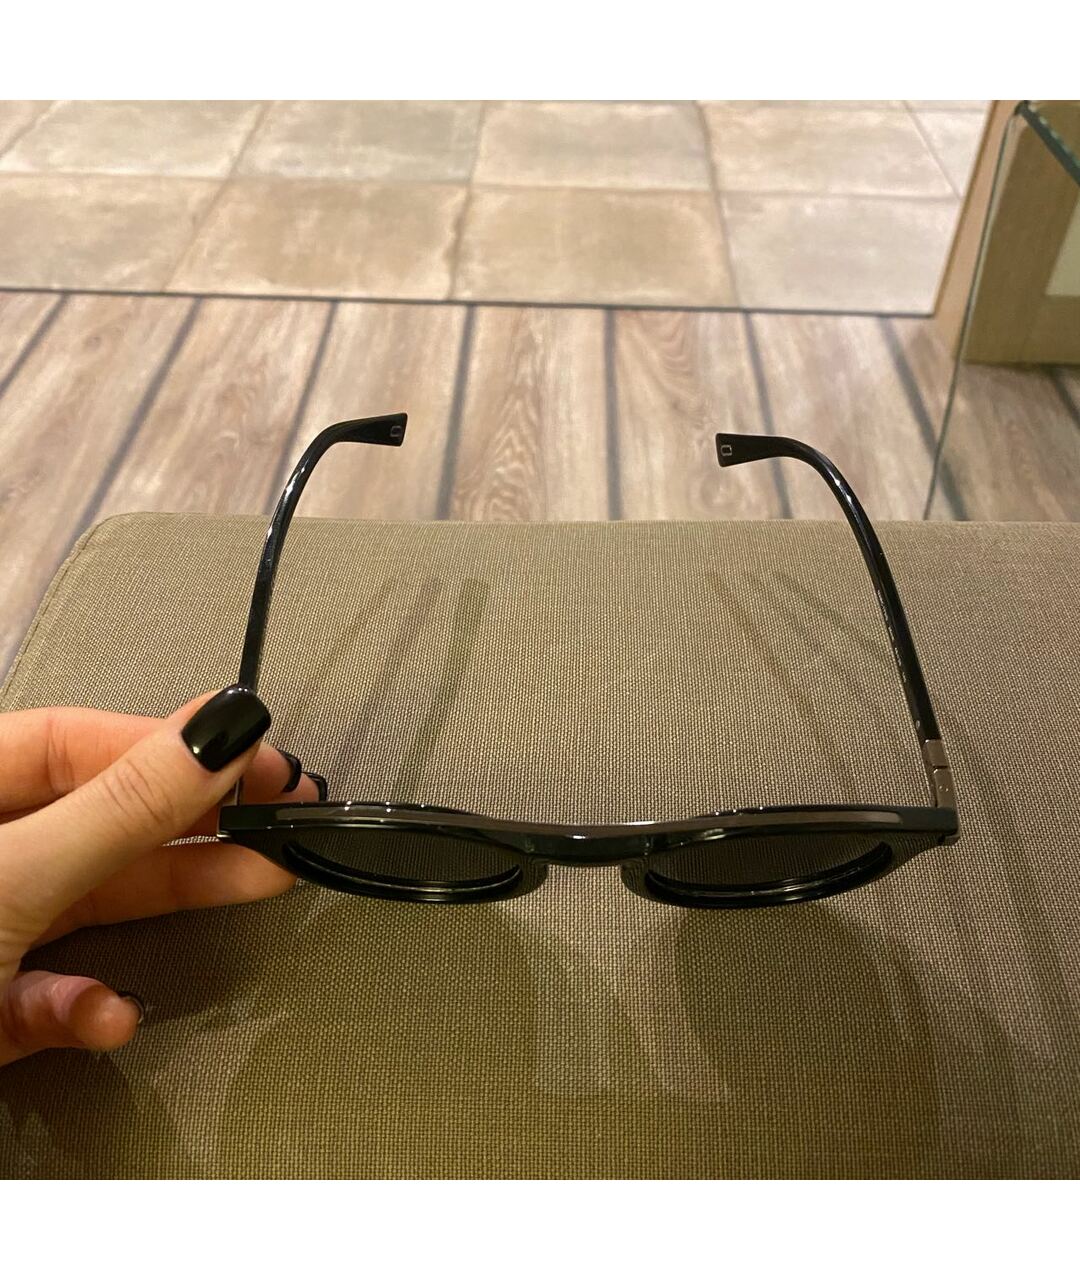 MARC JACOBS Черные пластиковые солнцезащитные очки, фото 7